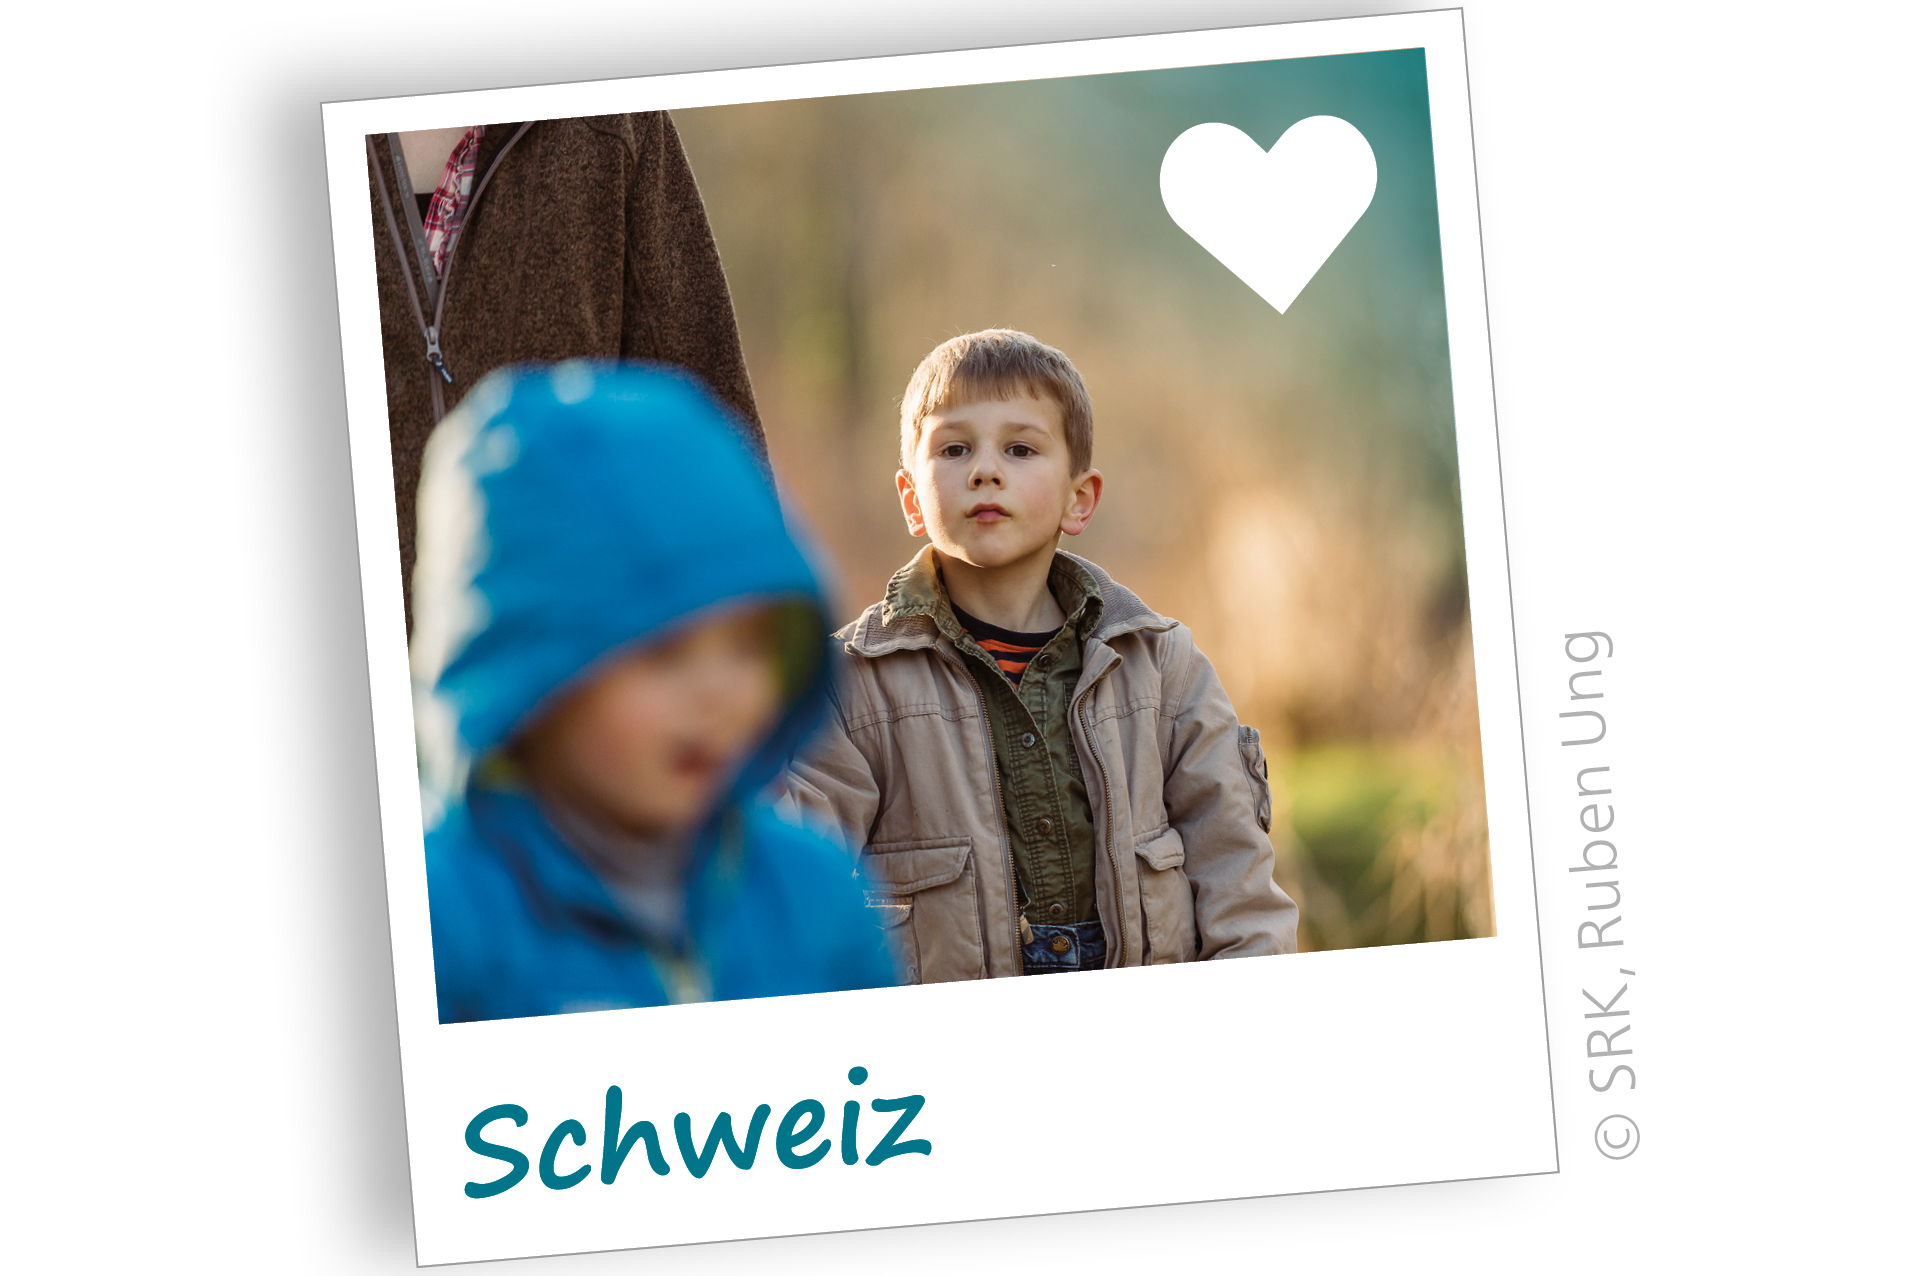 Zwei Kinder auf einem Spaziergang. Die Patenschaft für bedürftige Menschen in der Schweiz unterstützt vor allem Familien mit geringem Einkommen.